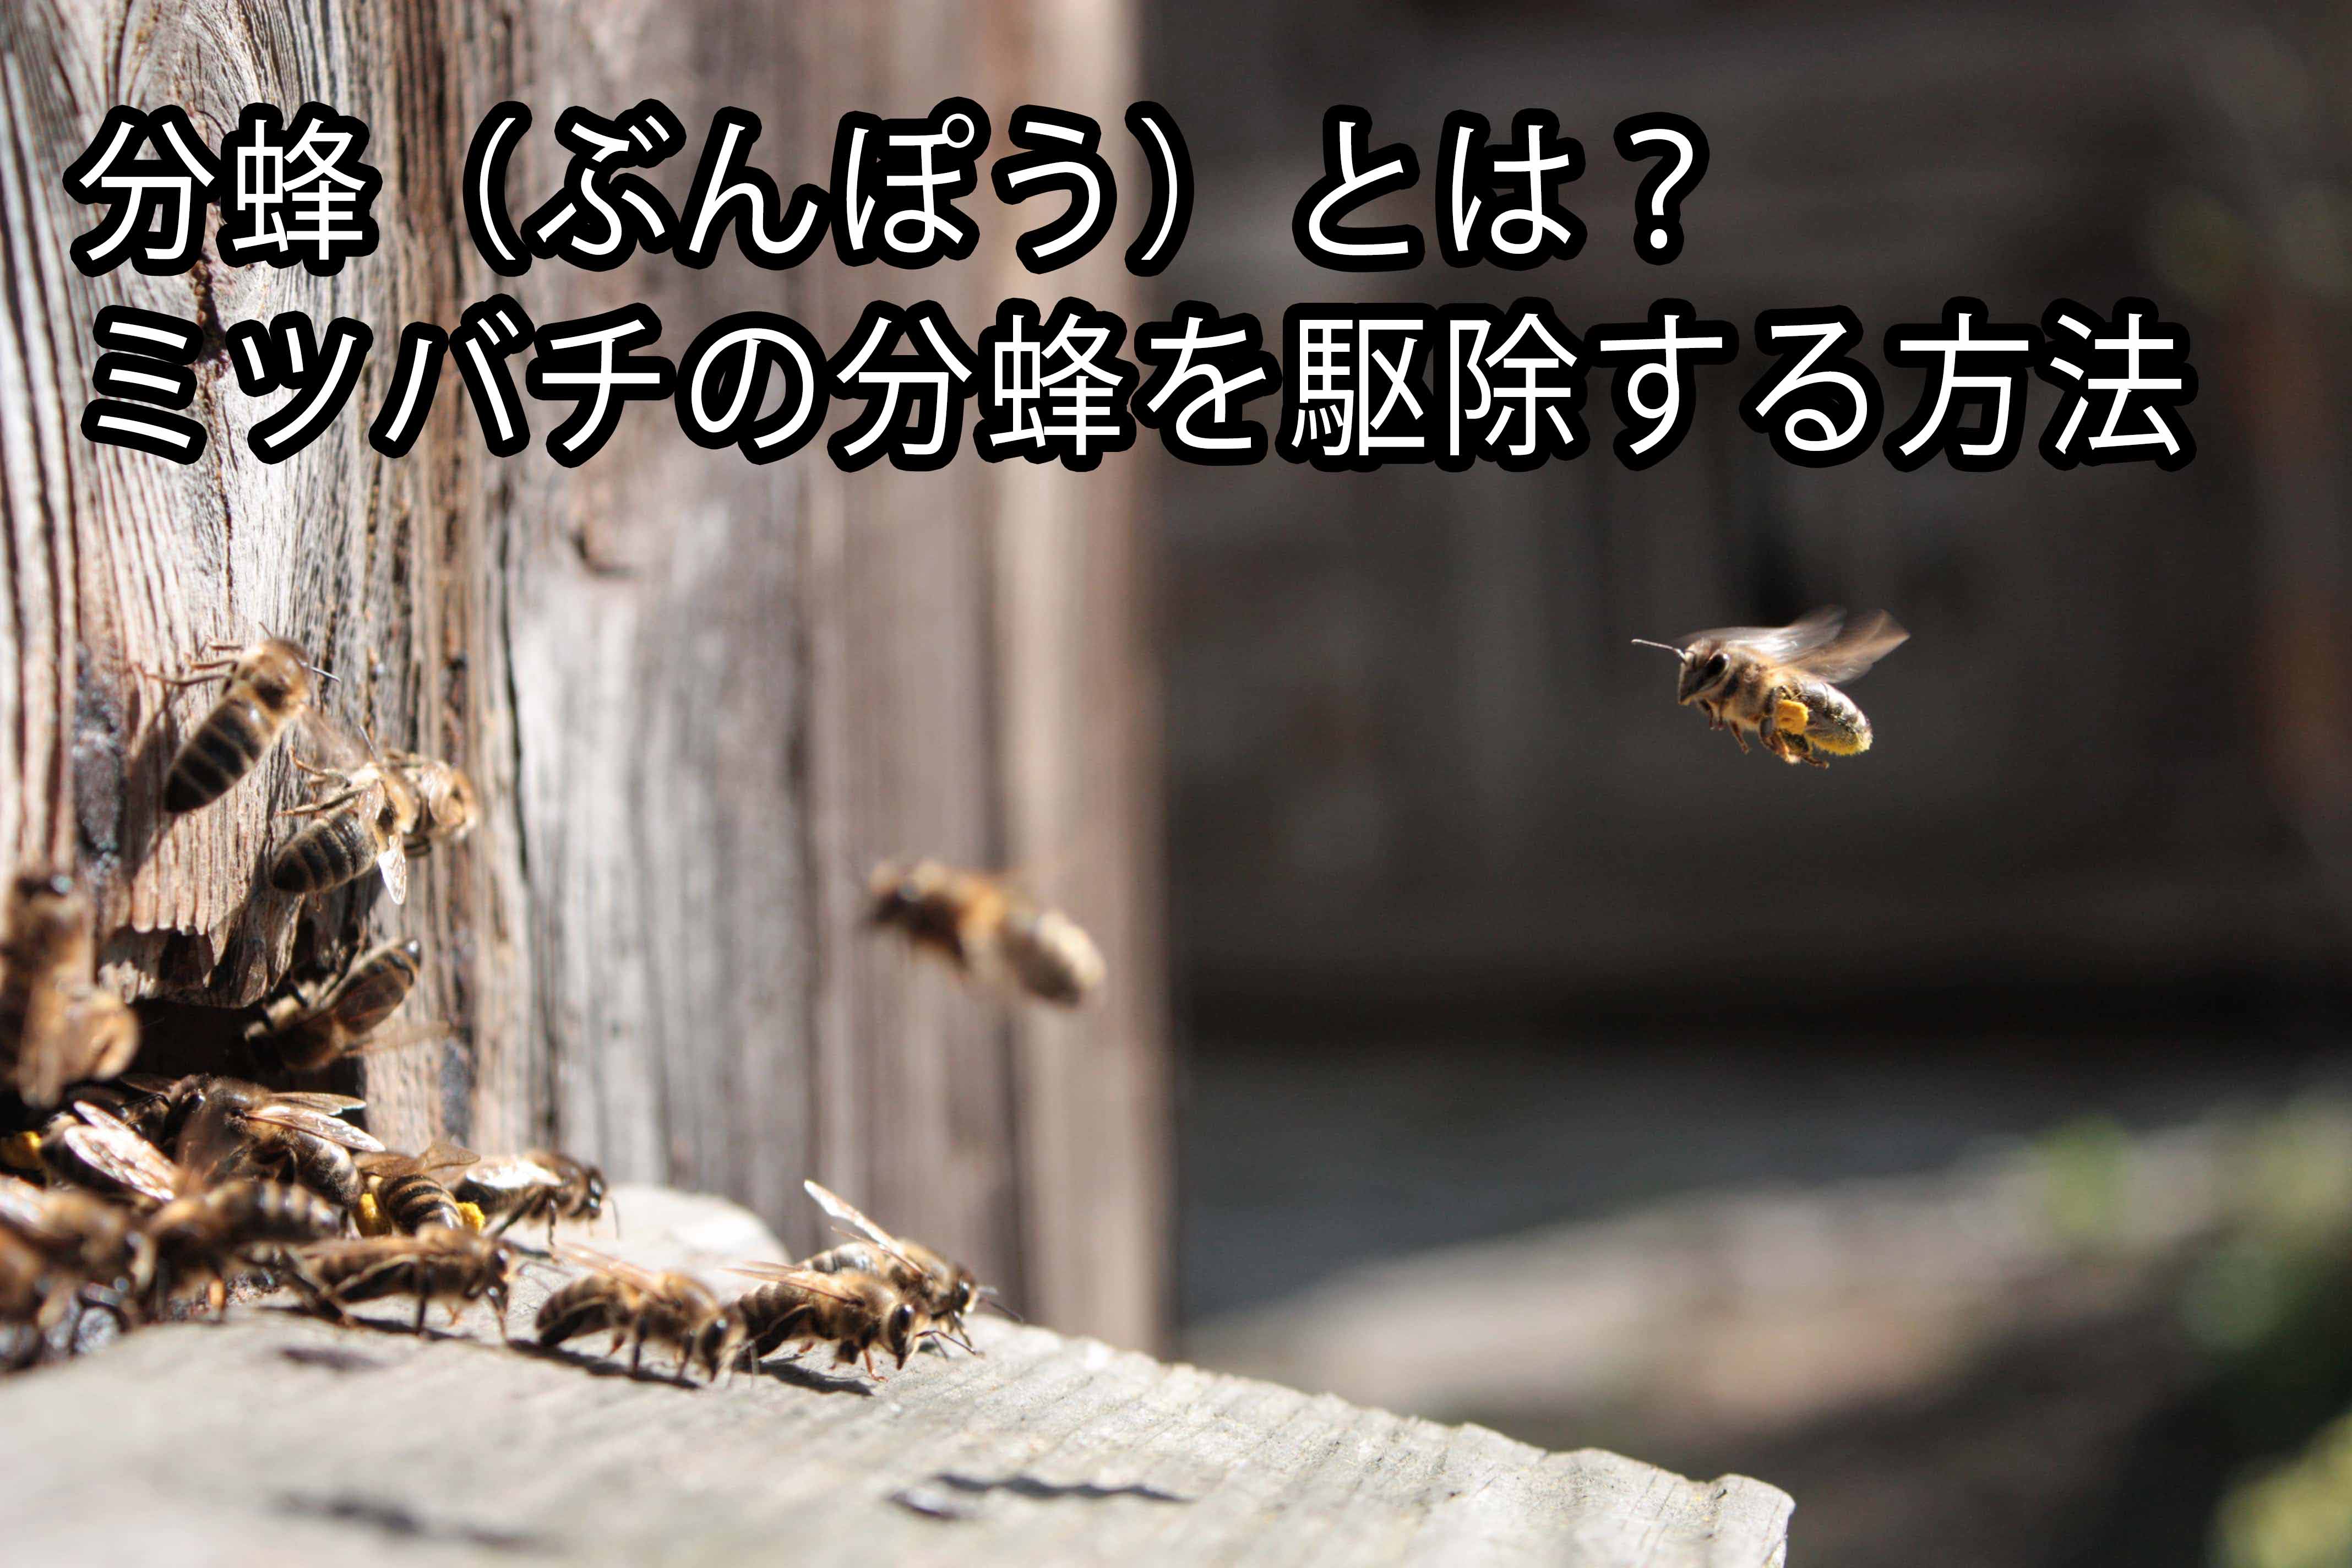 黒い蜂がいる 黒い蜂の種類や蜂に似た虫を駆除する方法 株式会社ミナト 害獣 害虫駆除